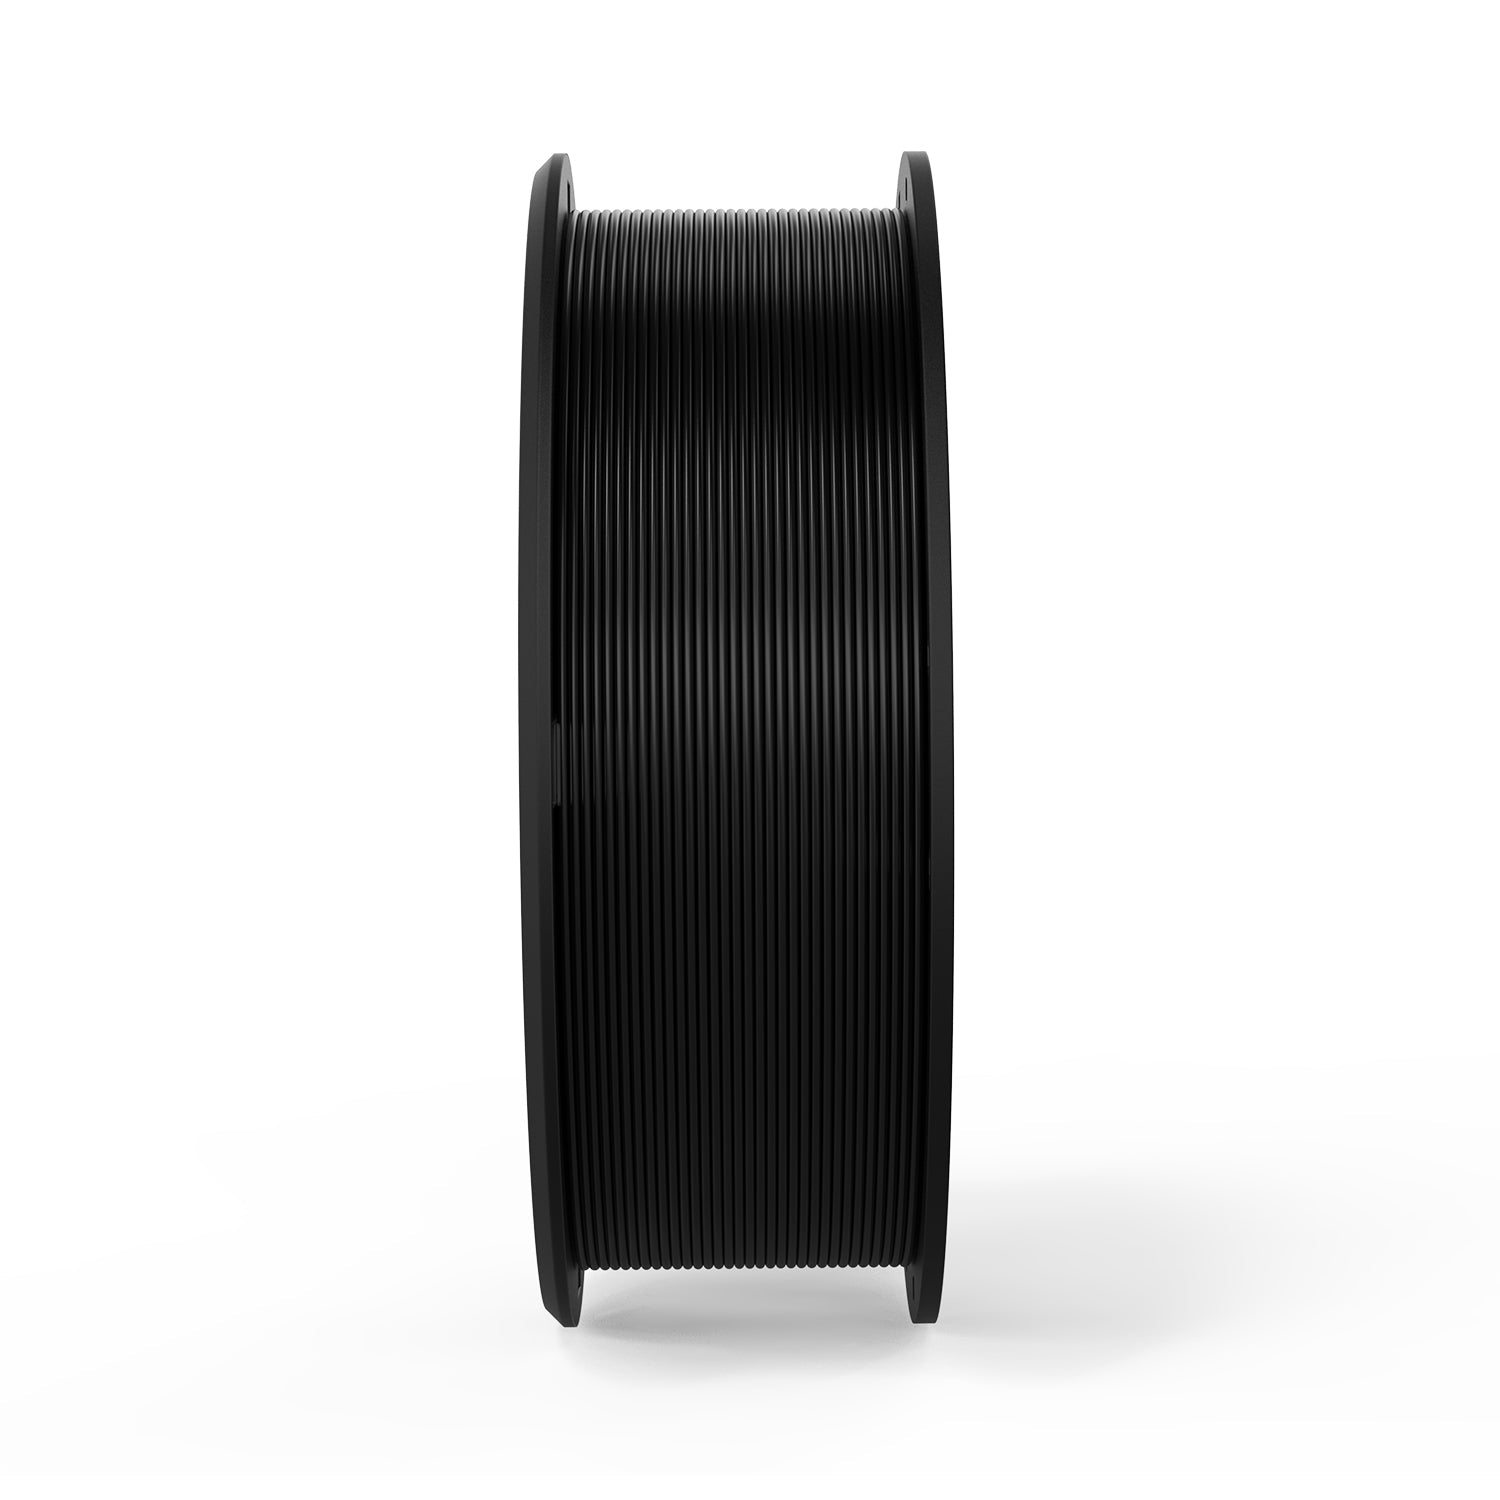 ERYONE fibra di carbonio PLA 3D filamento stampante 1,75 millimetri, precisione dimensionale +/- 0,05 mm 1 kg (2.2LBS)/piscina